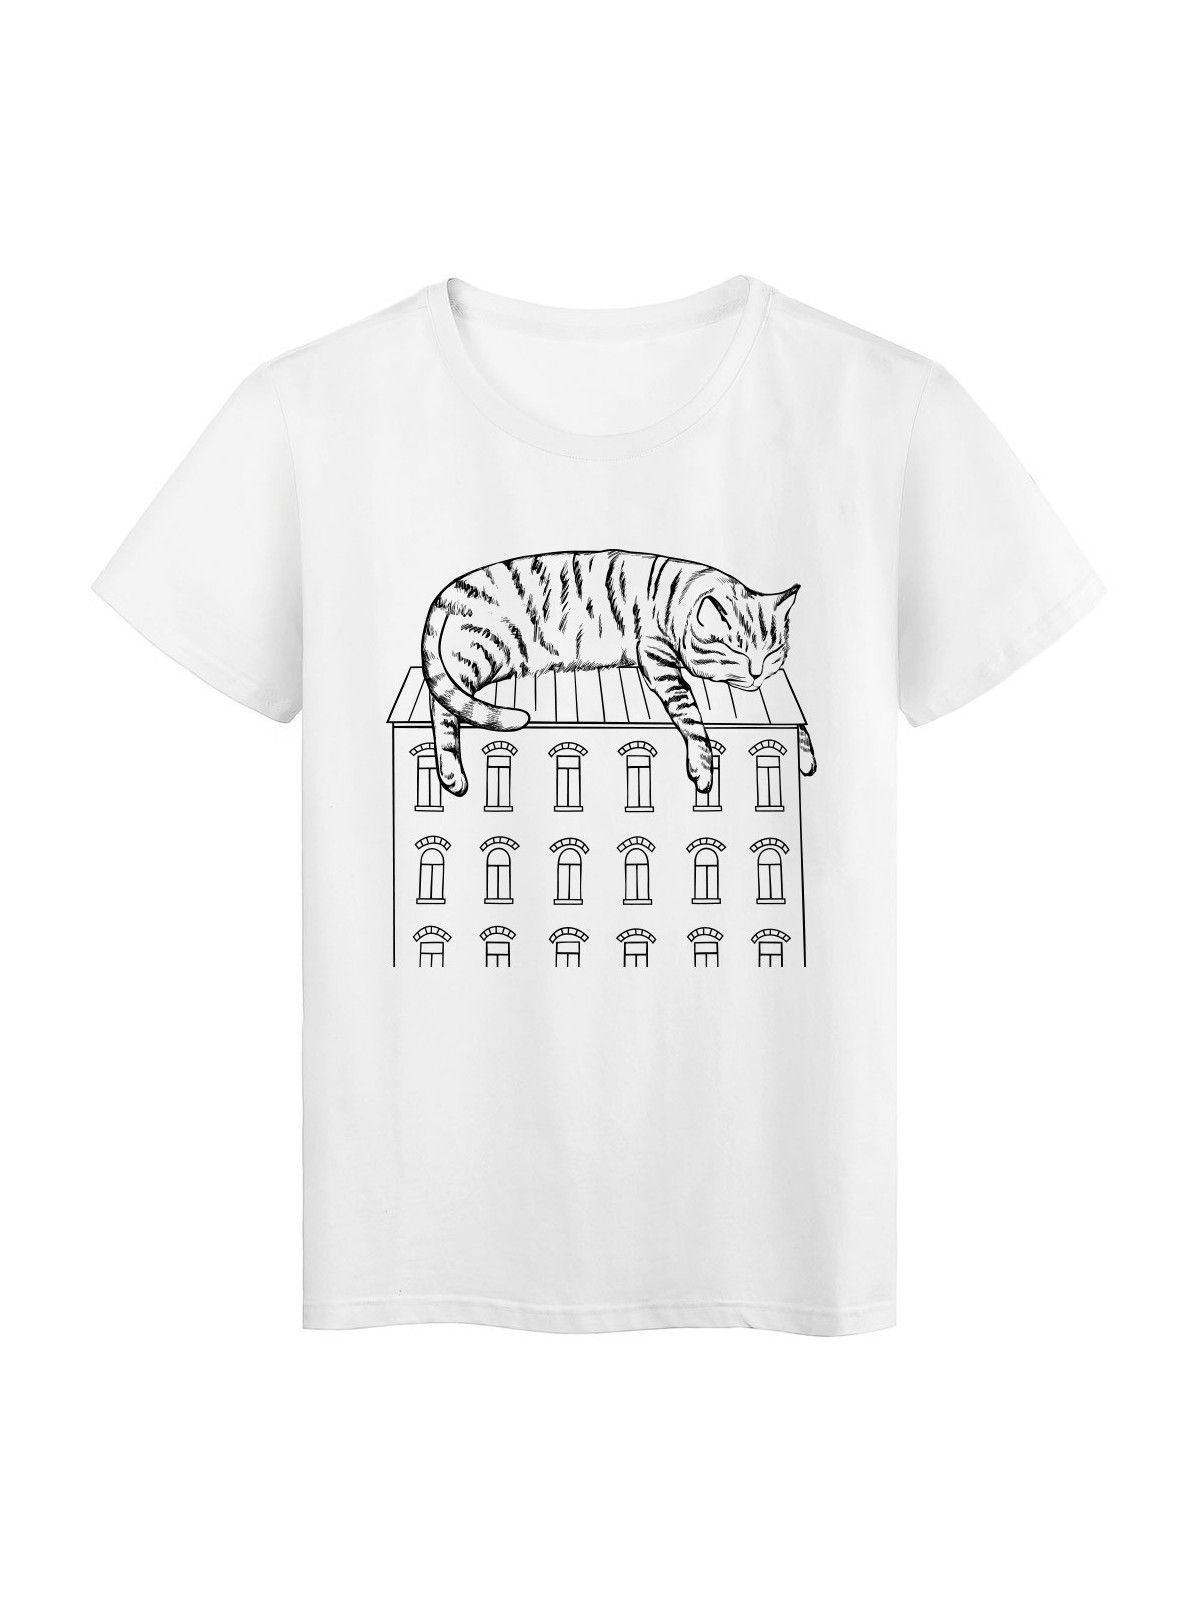 T-Shirt blanc design chat sur toit de maison rÃ©f Tee shirt 2164